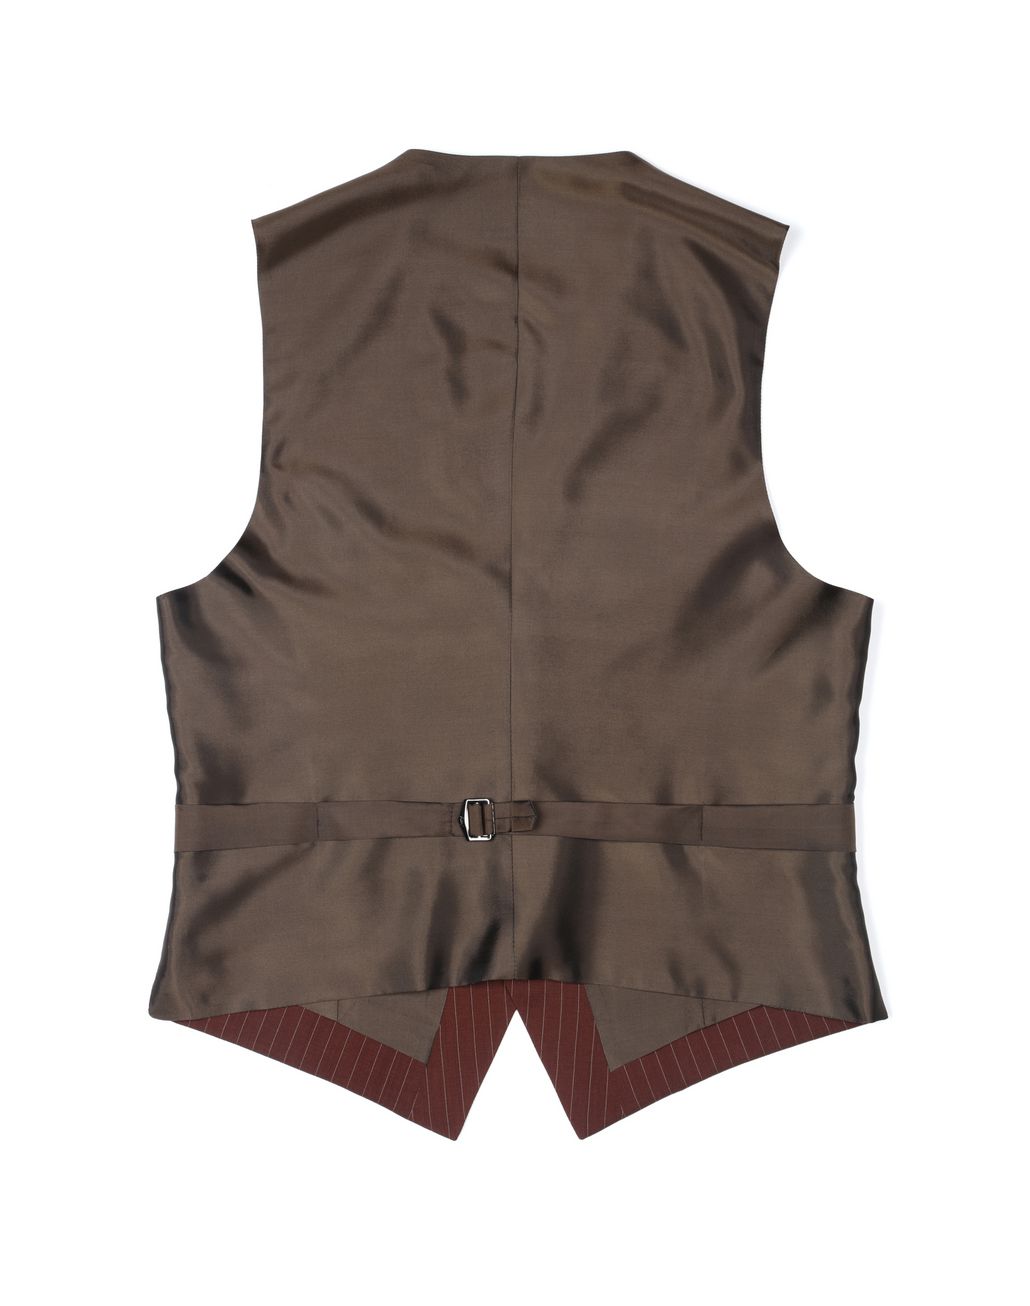 Brioni ‎Men‎'s ‎Suits & Jackets‎ | Brioni Official Online Store